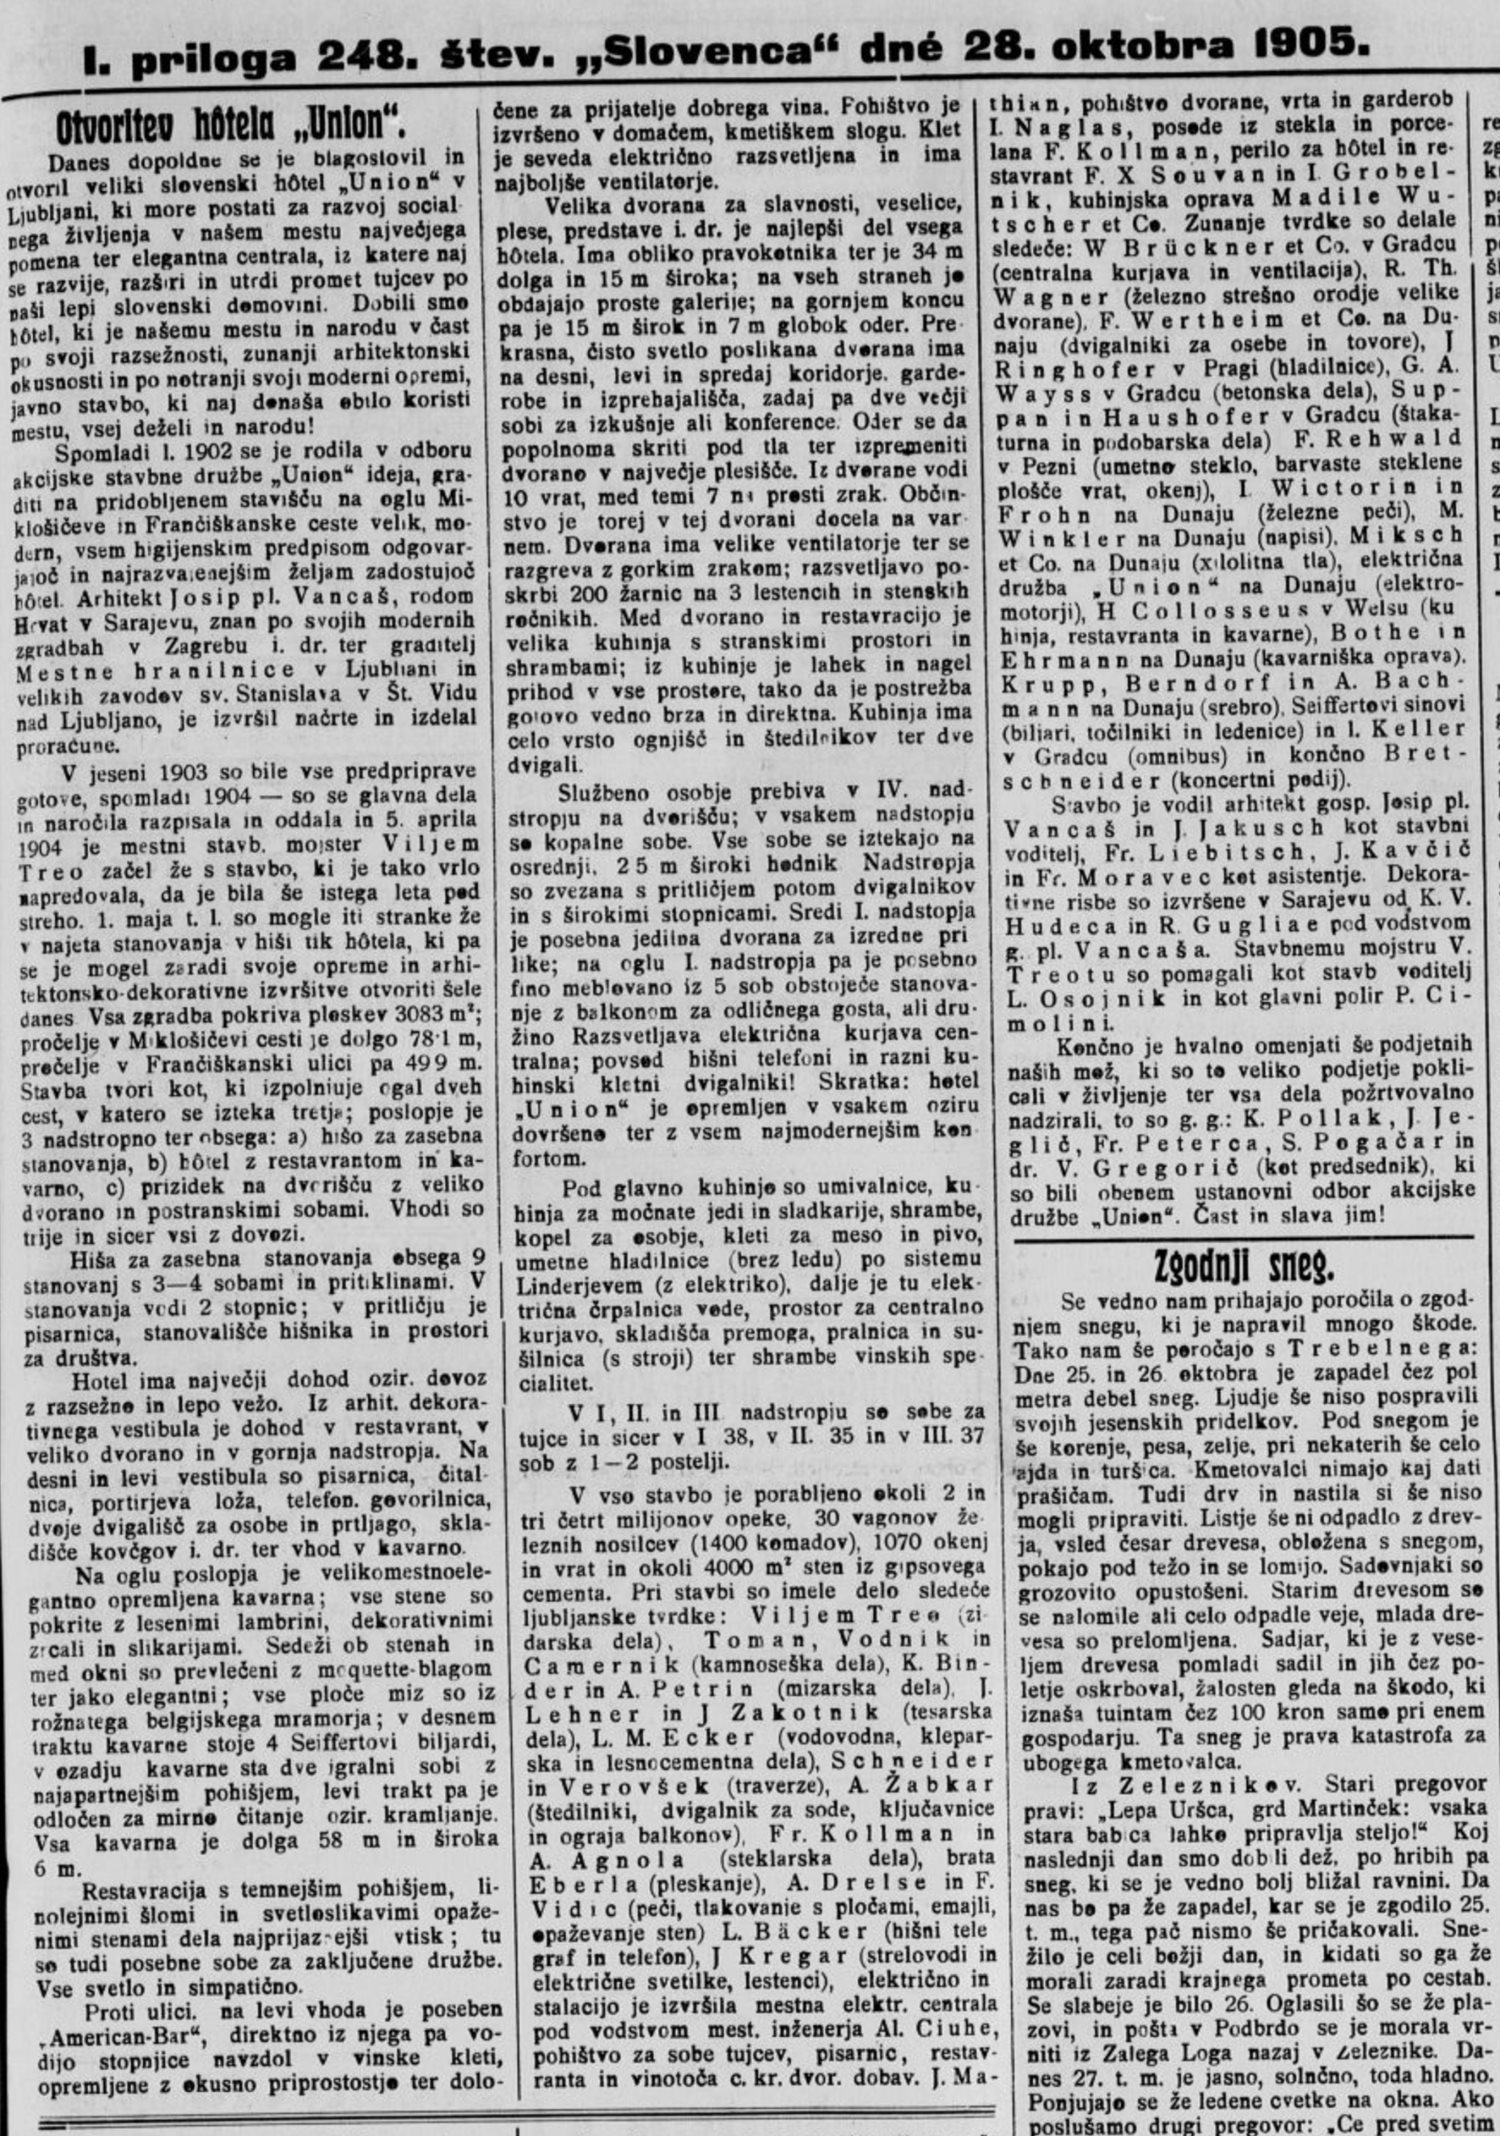 Otvoritev hotela Union, Slovenec 28. oktober 1905, str. 3